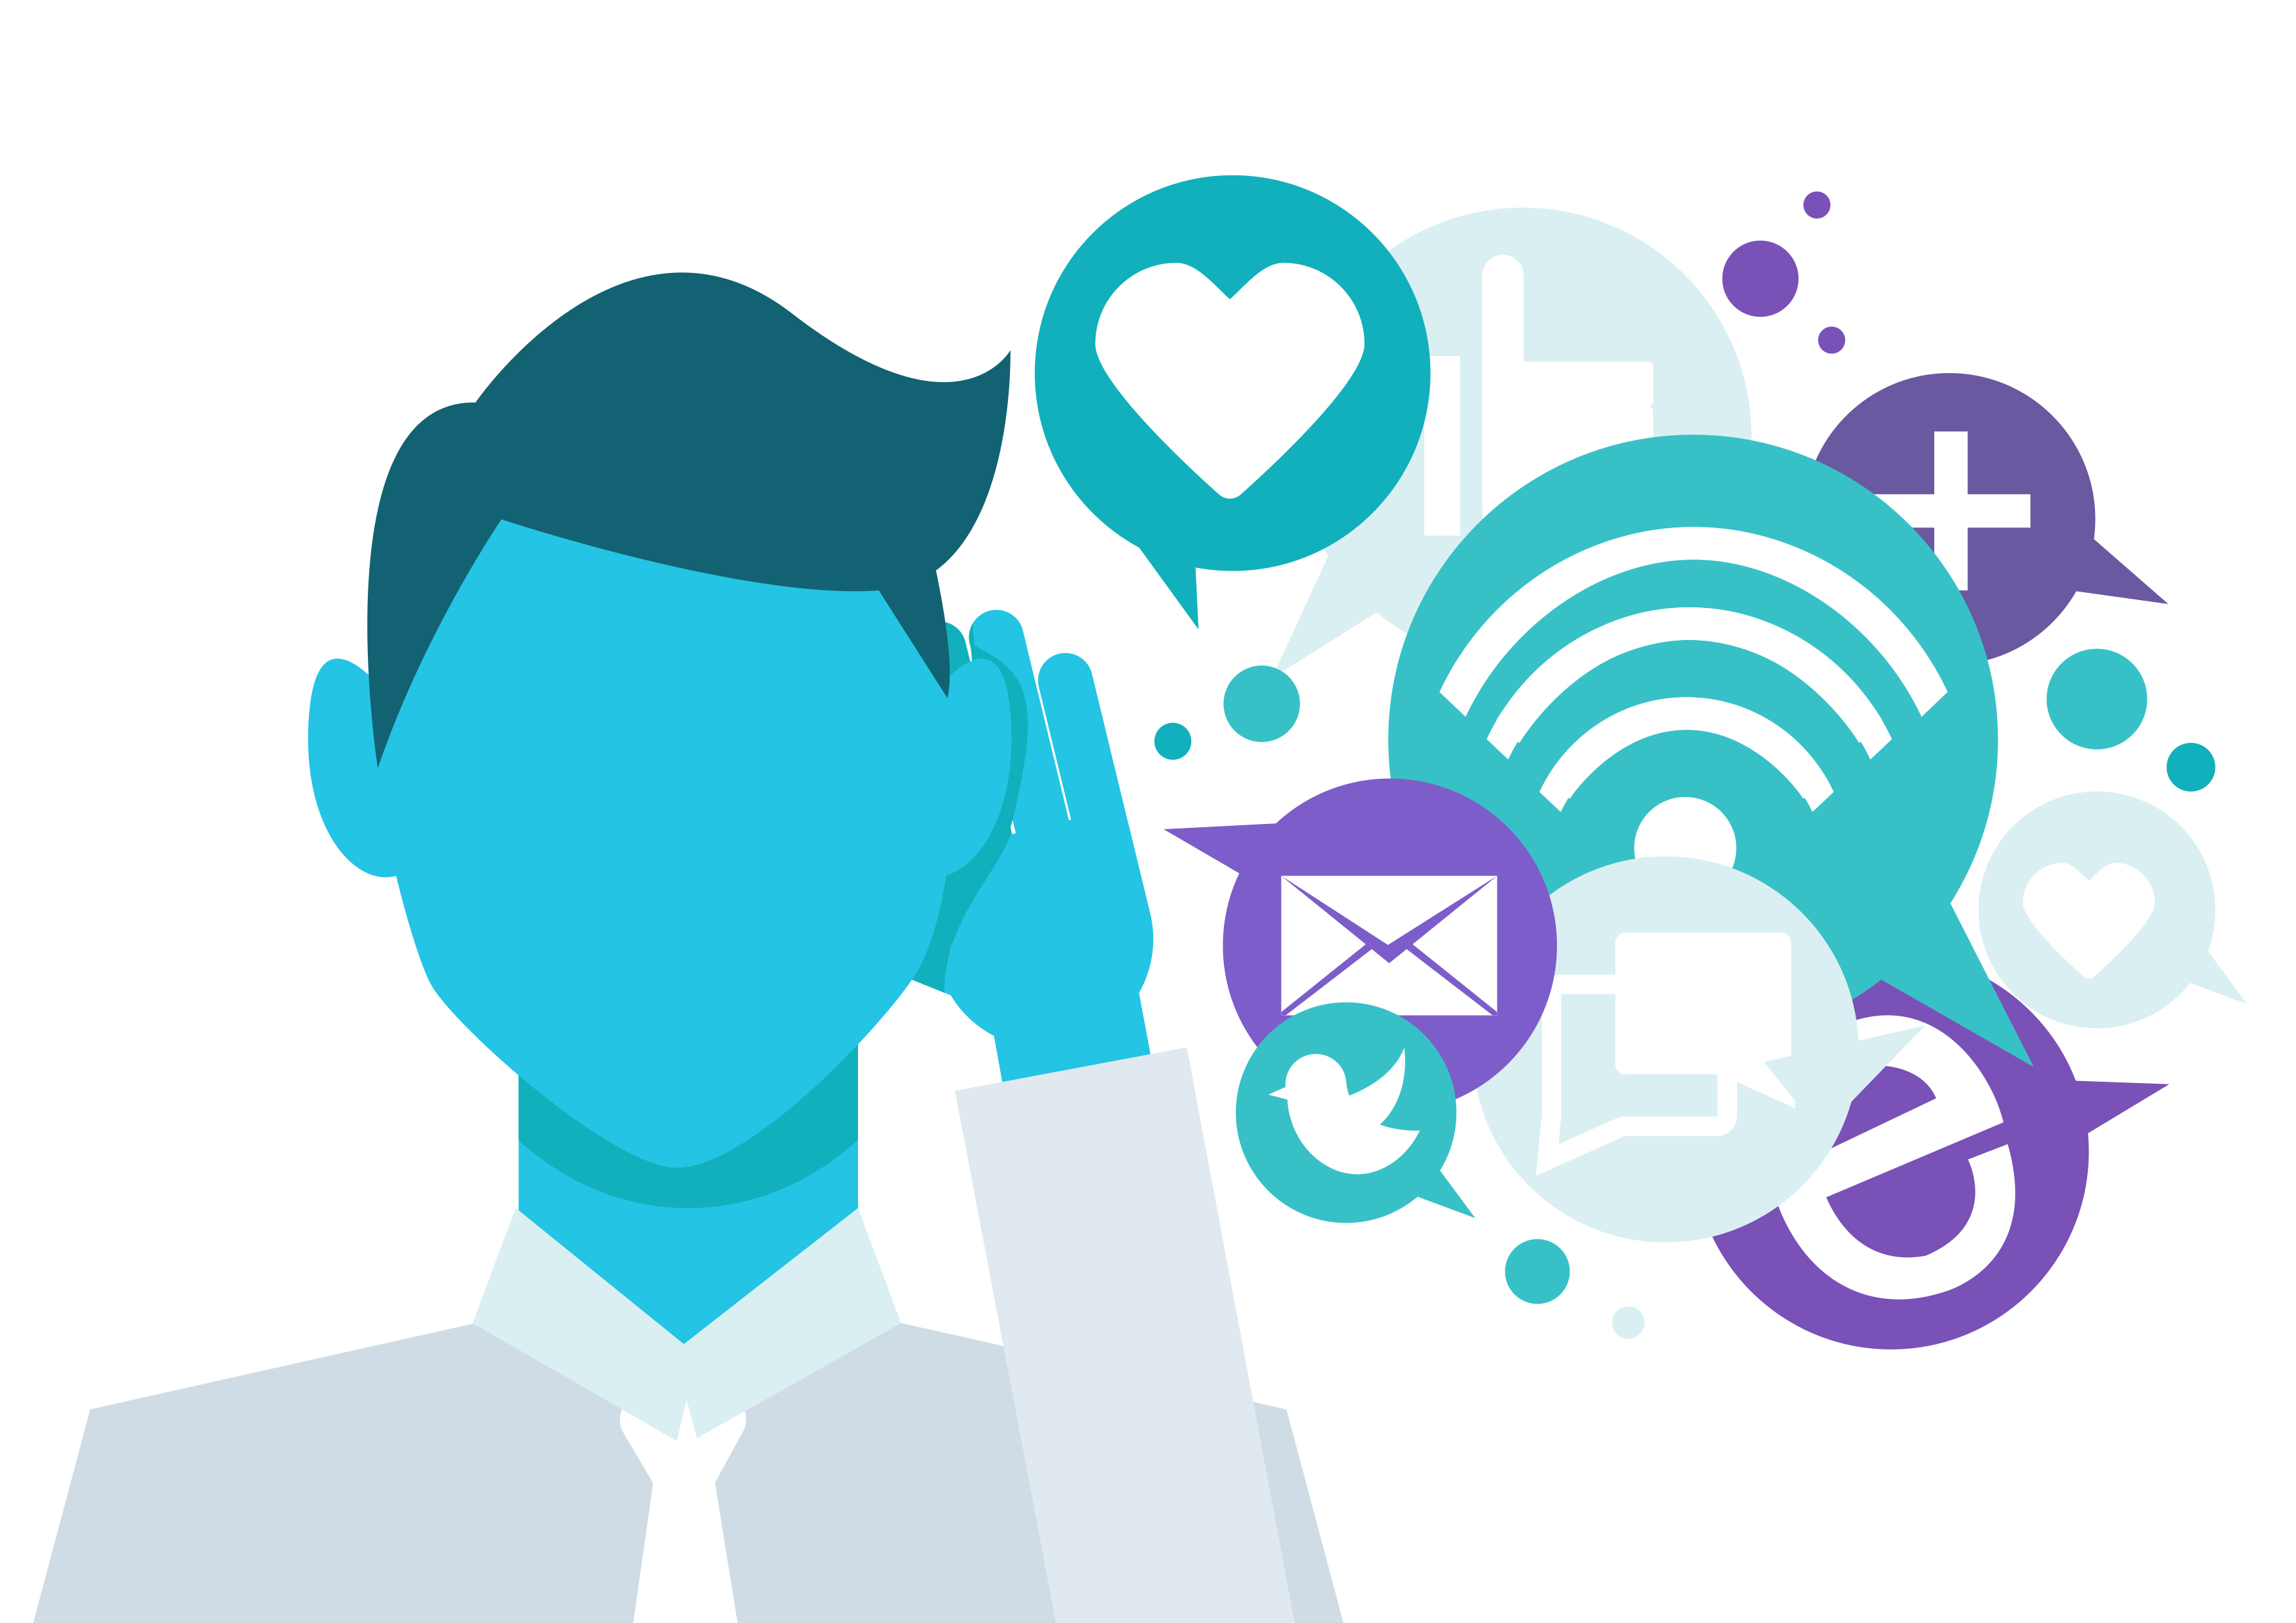 Manfaat Social Media Listening and Tracking Tools untuk Pemasaran Bisnis di Social Media - strategi sosial media marketing - Matamaya